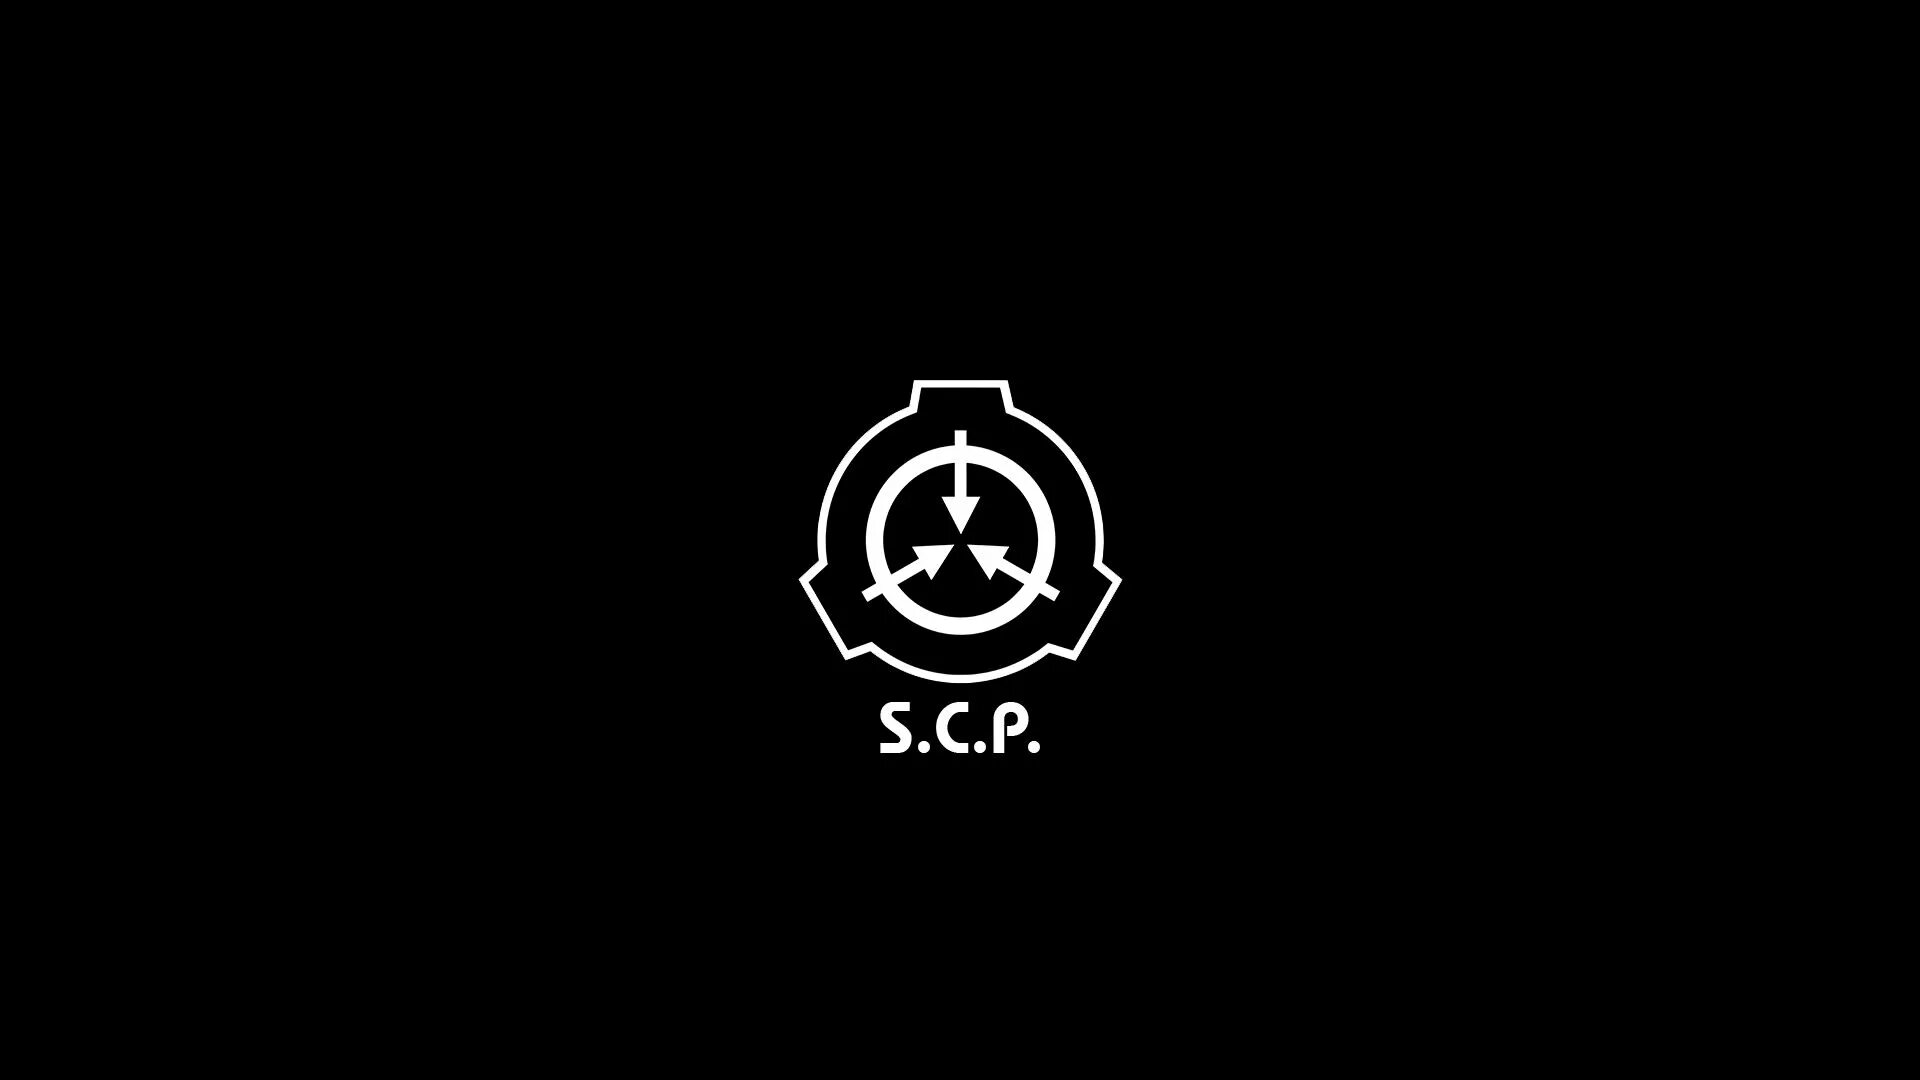 16 10 39. SCP Foundation обои. Знак SCP фонда. SCP знак на черном фоне. SCP фонд знак на чёрном фоне.